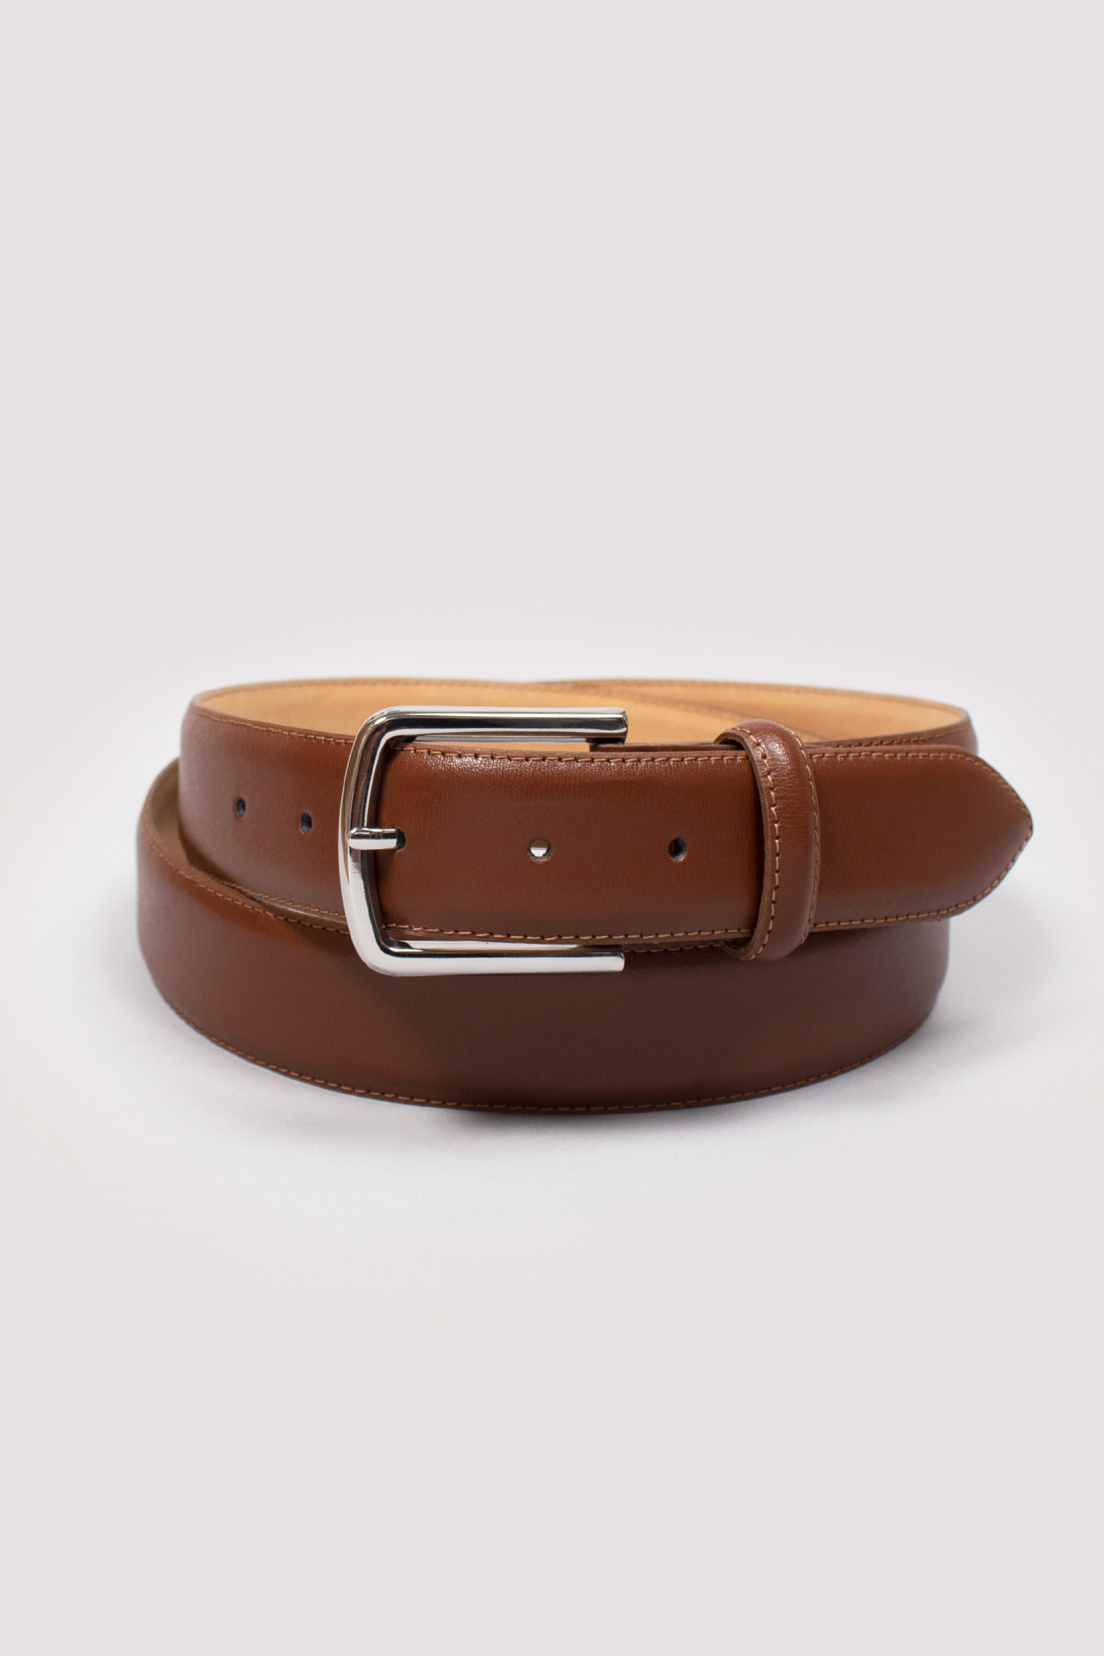 LePantalon: men's cognac brown leather belt